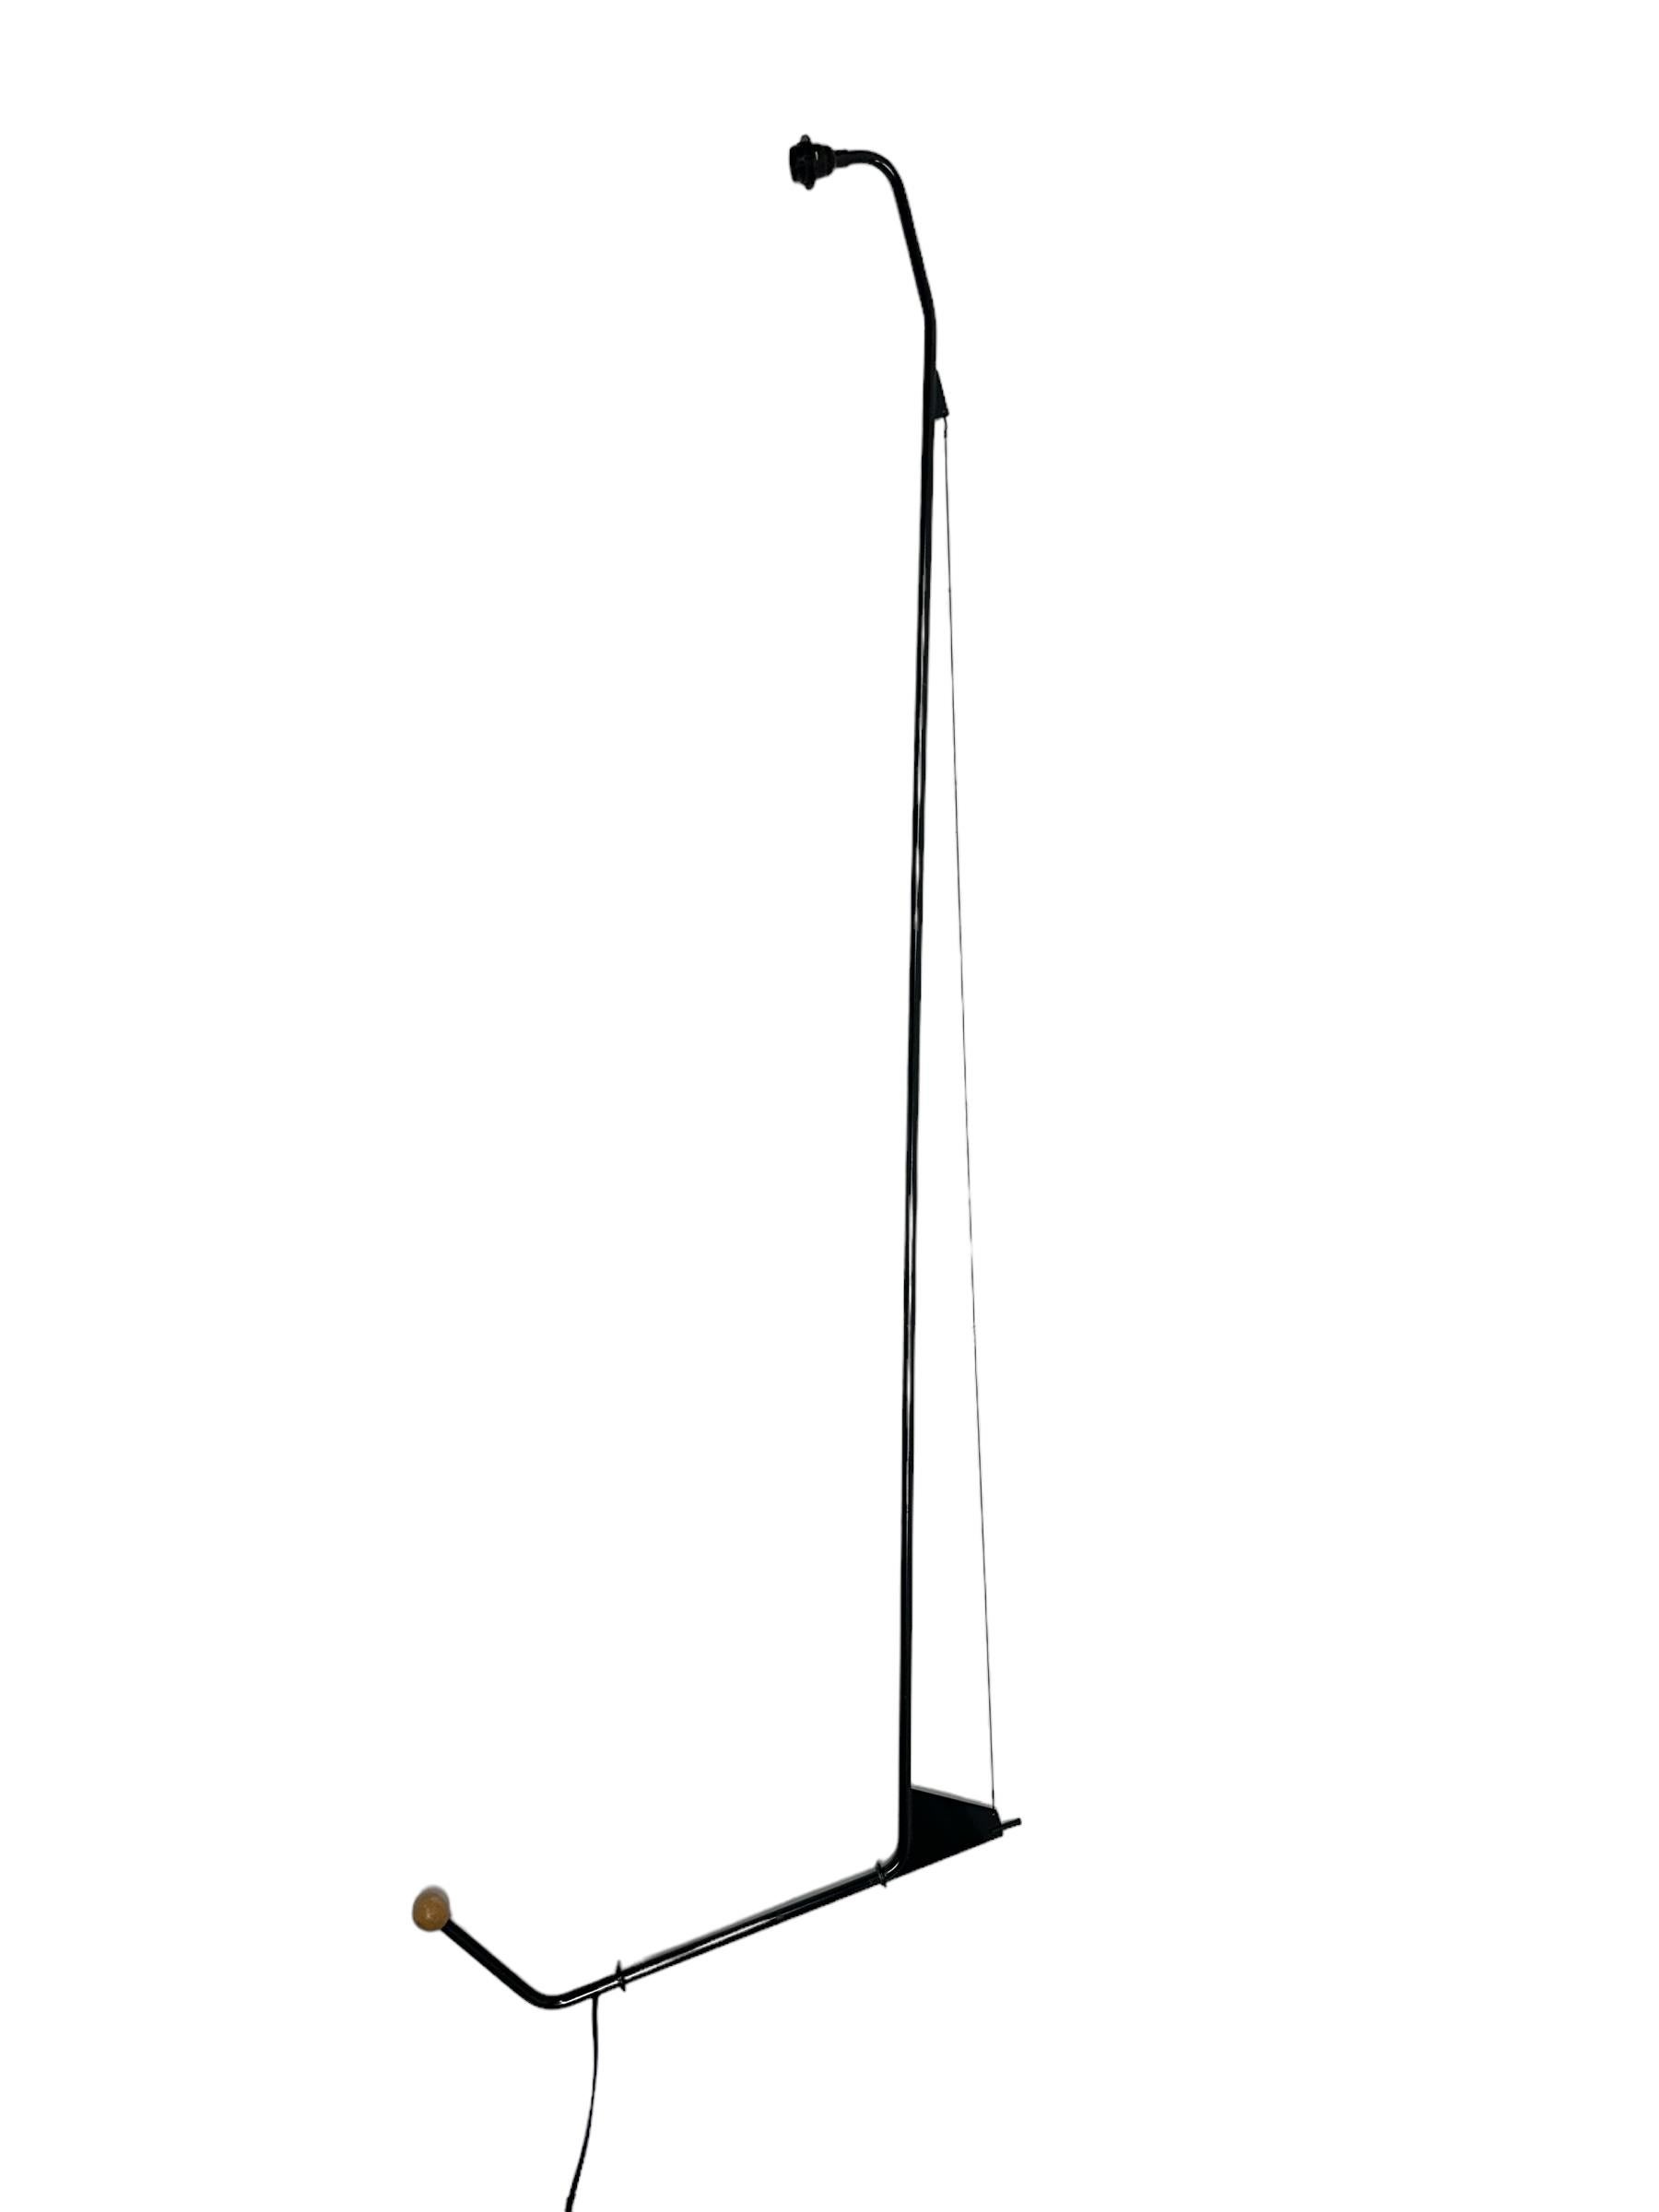 Conçue par Jean Prouvé pour sa Maison Tropicale, la lampe Potence (1950) offre une solution unique pour l'éclairage par suspension, grâce à son ingénierie ingénieuse et à sa forme élégante. Constituée d'une seule tige métallique qui s'étend sur près